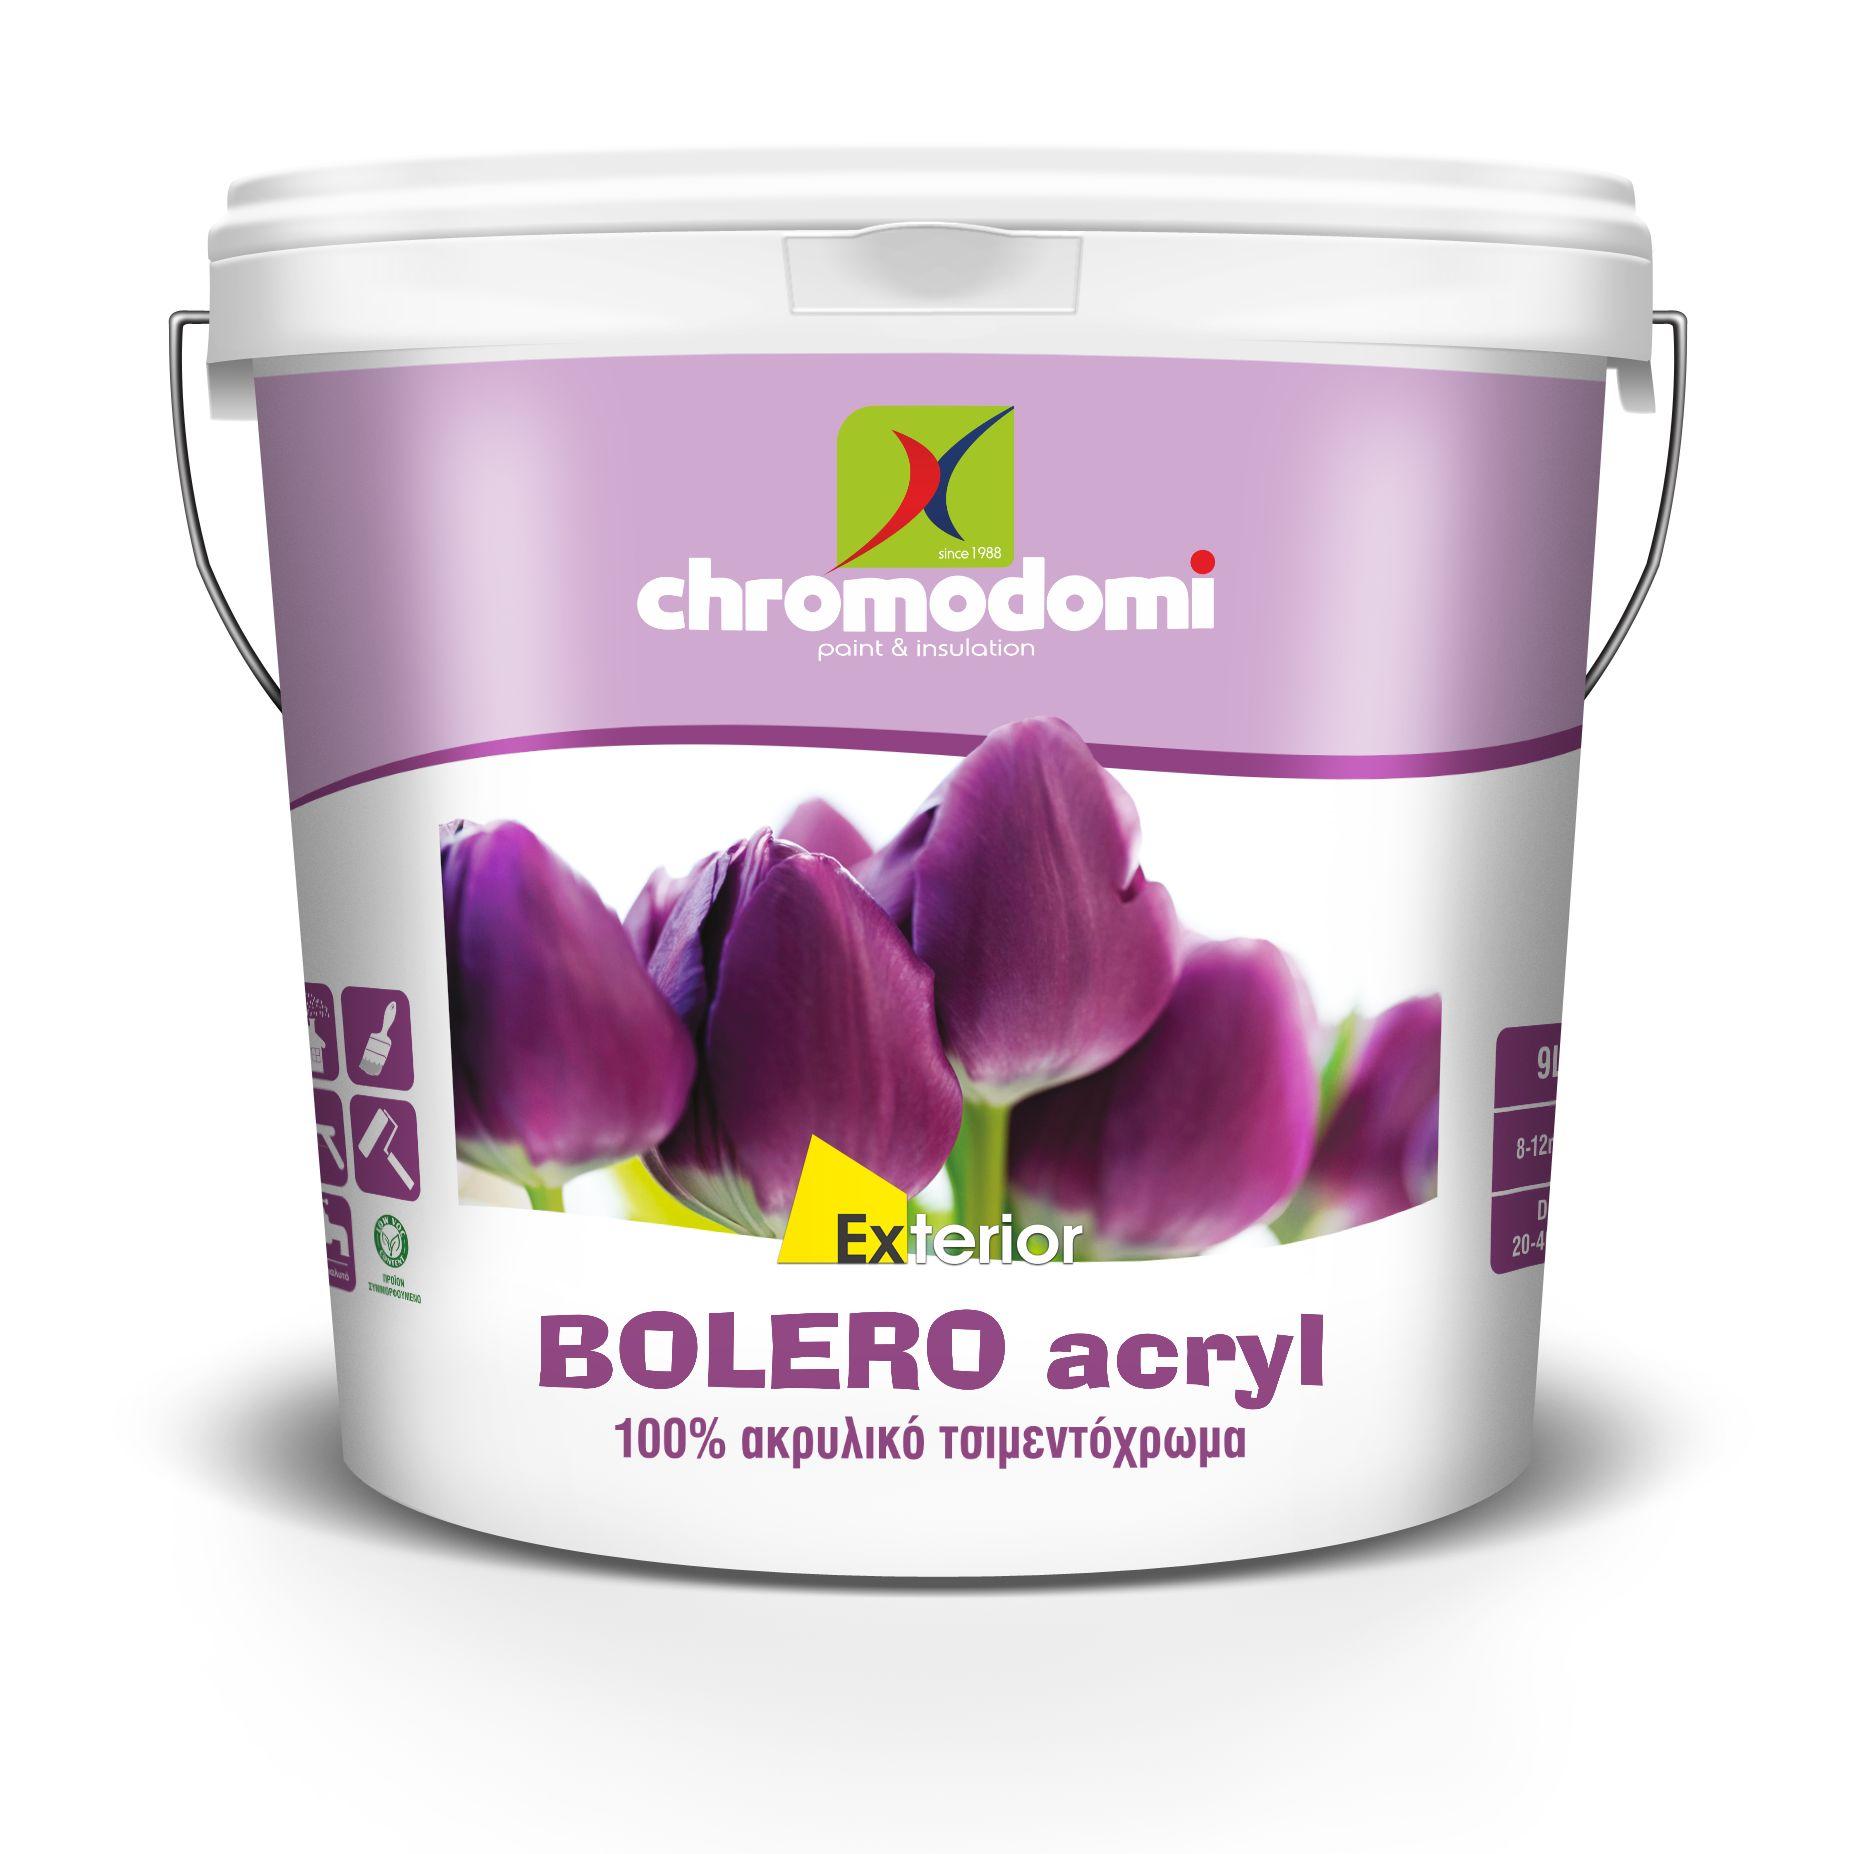 ACRYLIC PAINT - BOLERO ACRYL (excellent quality acrylic cement paint)